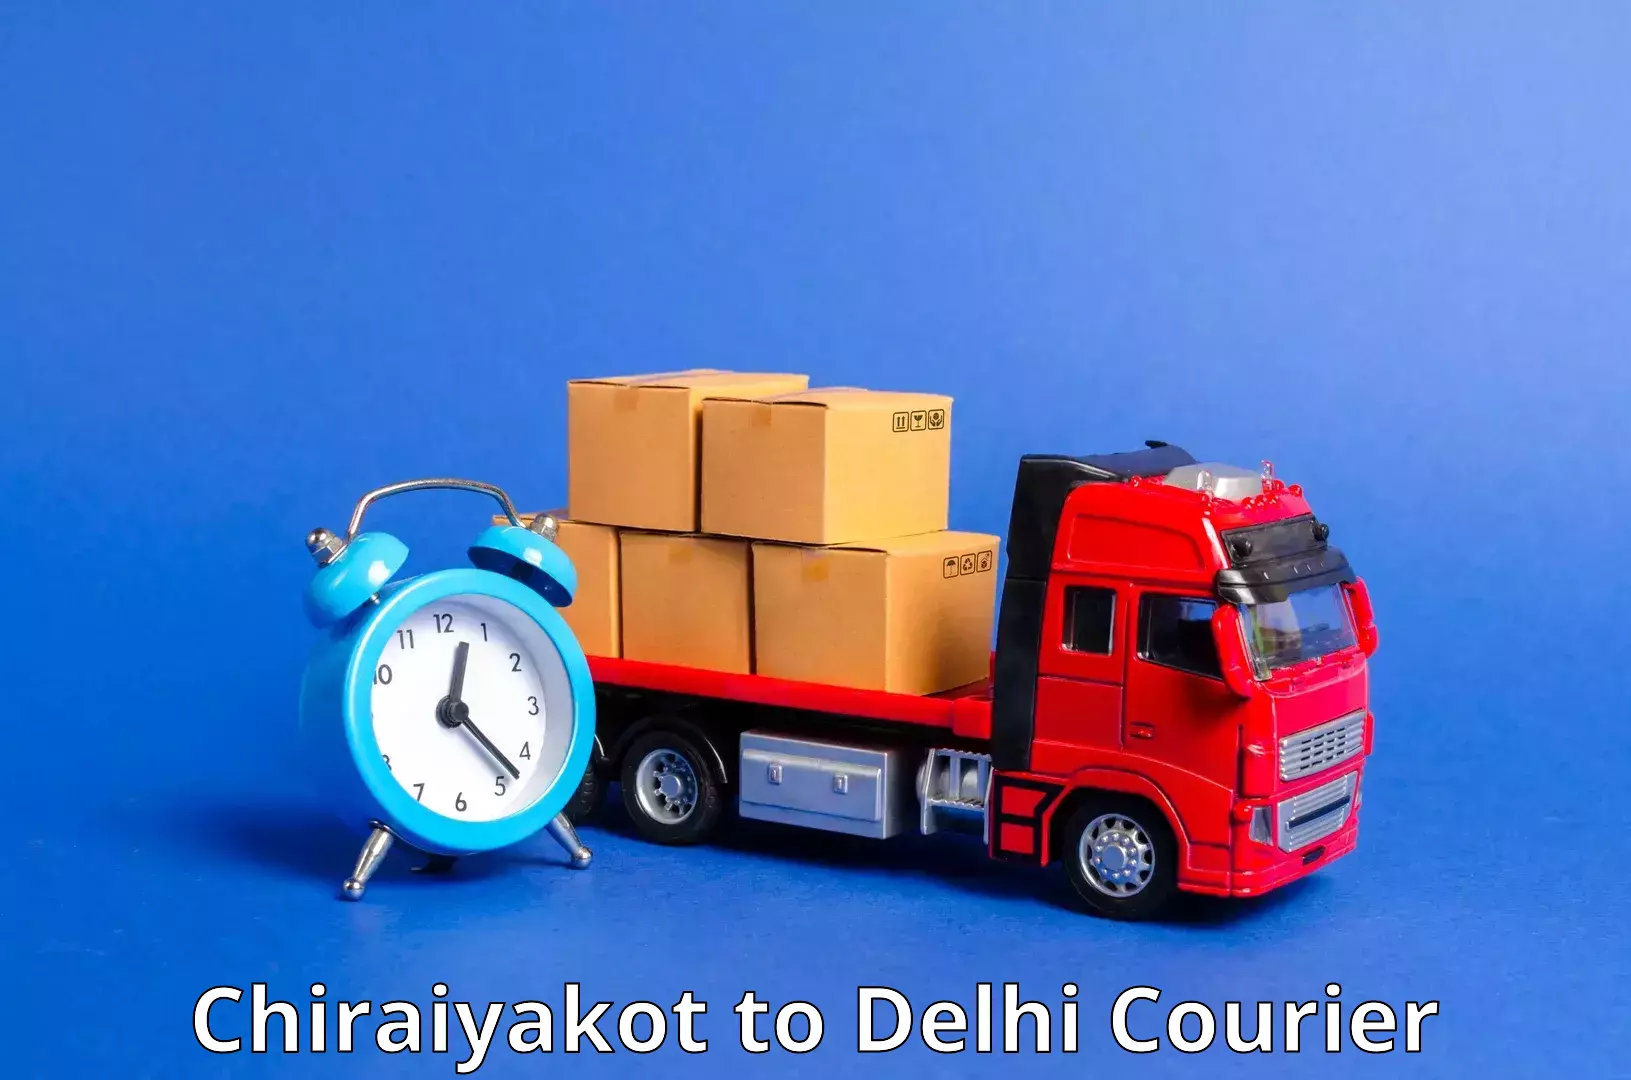 Full-service courier options Chiraiyakot to Jawaharlal Nehru University New Delhi